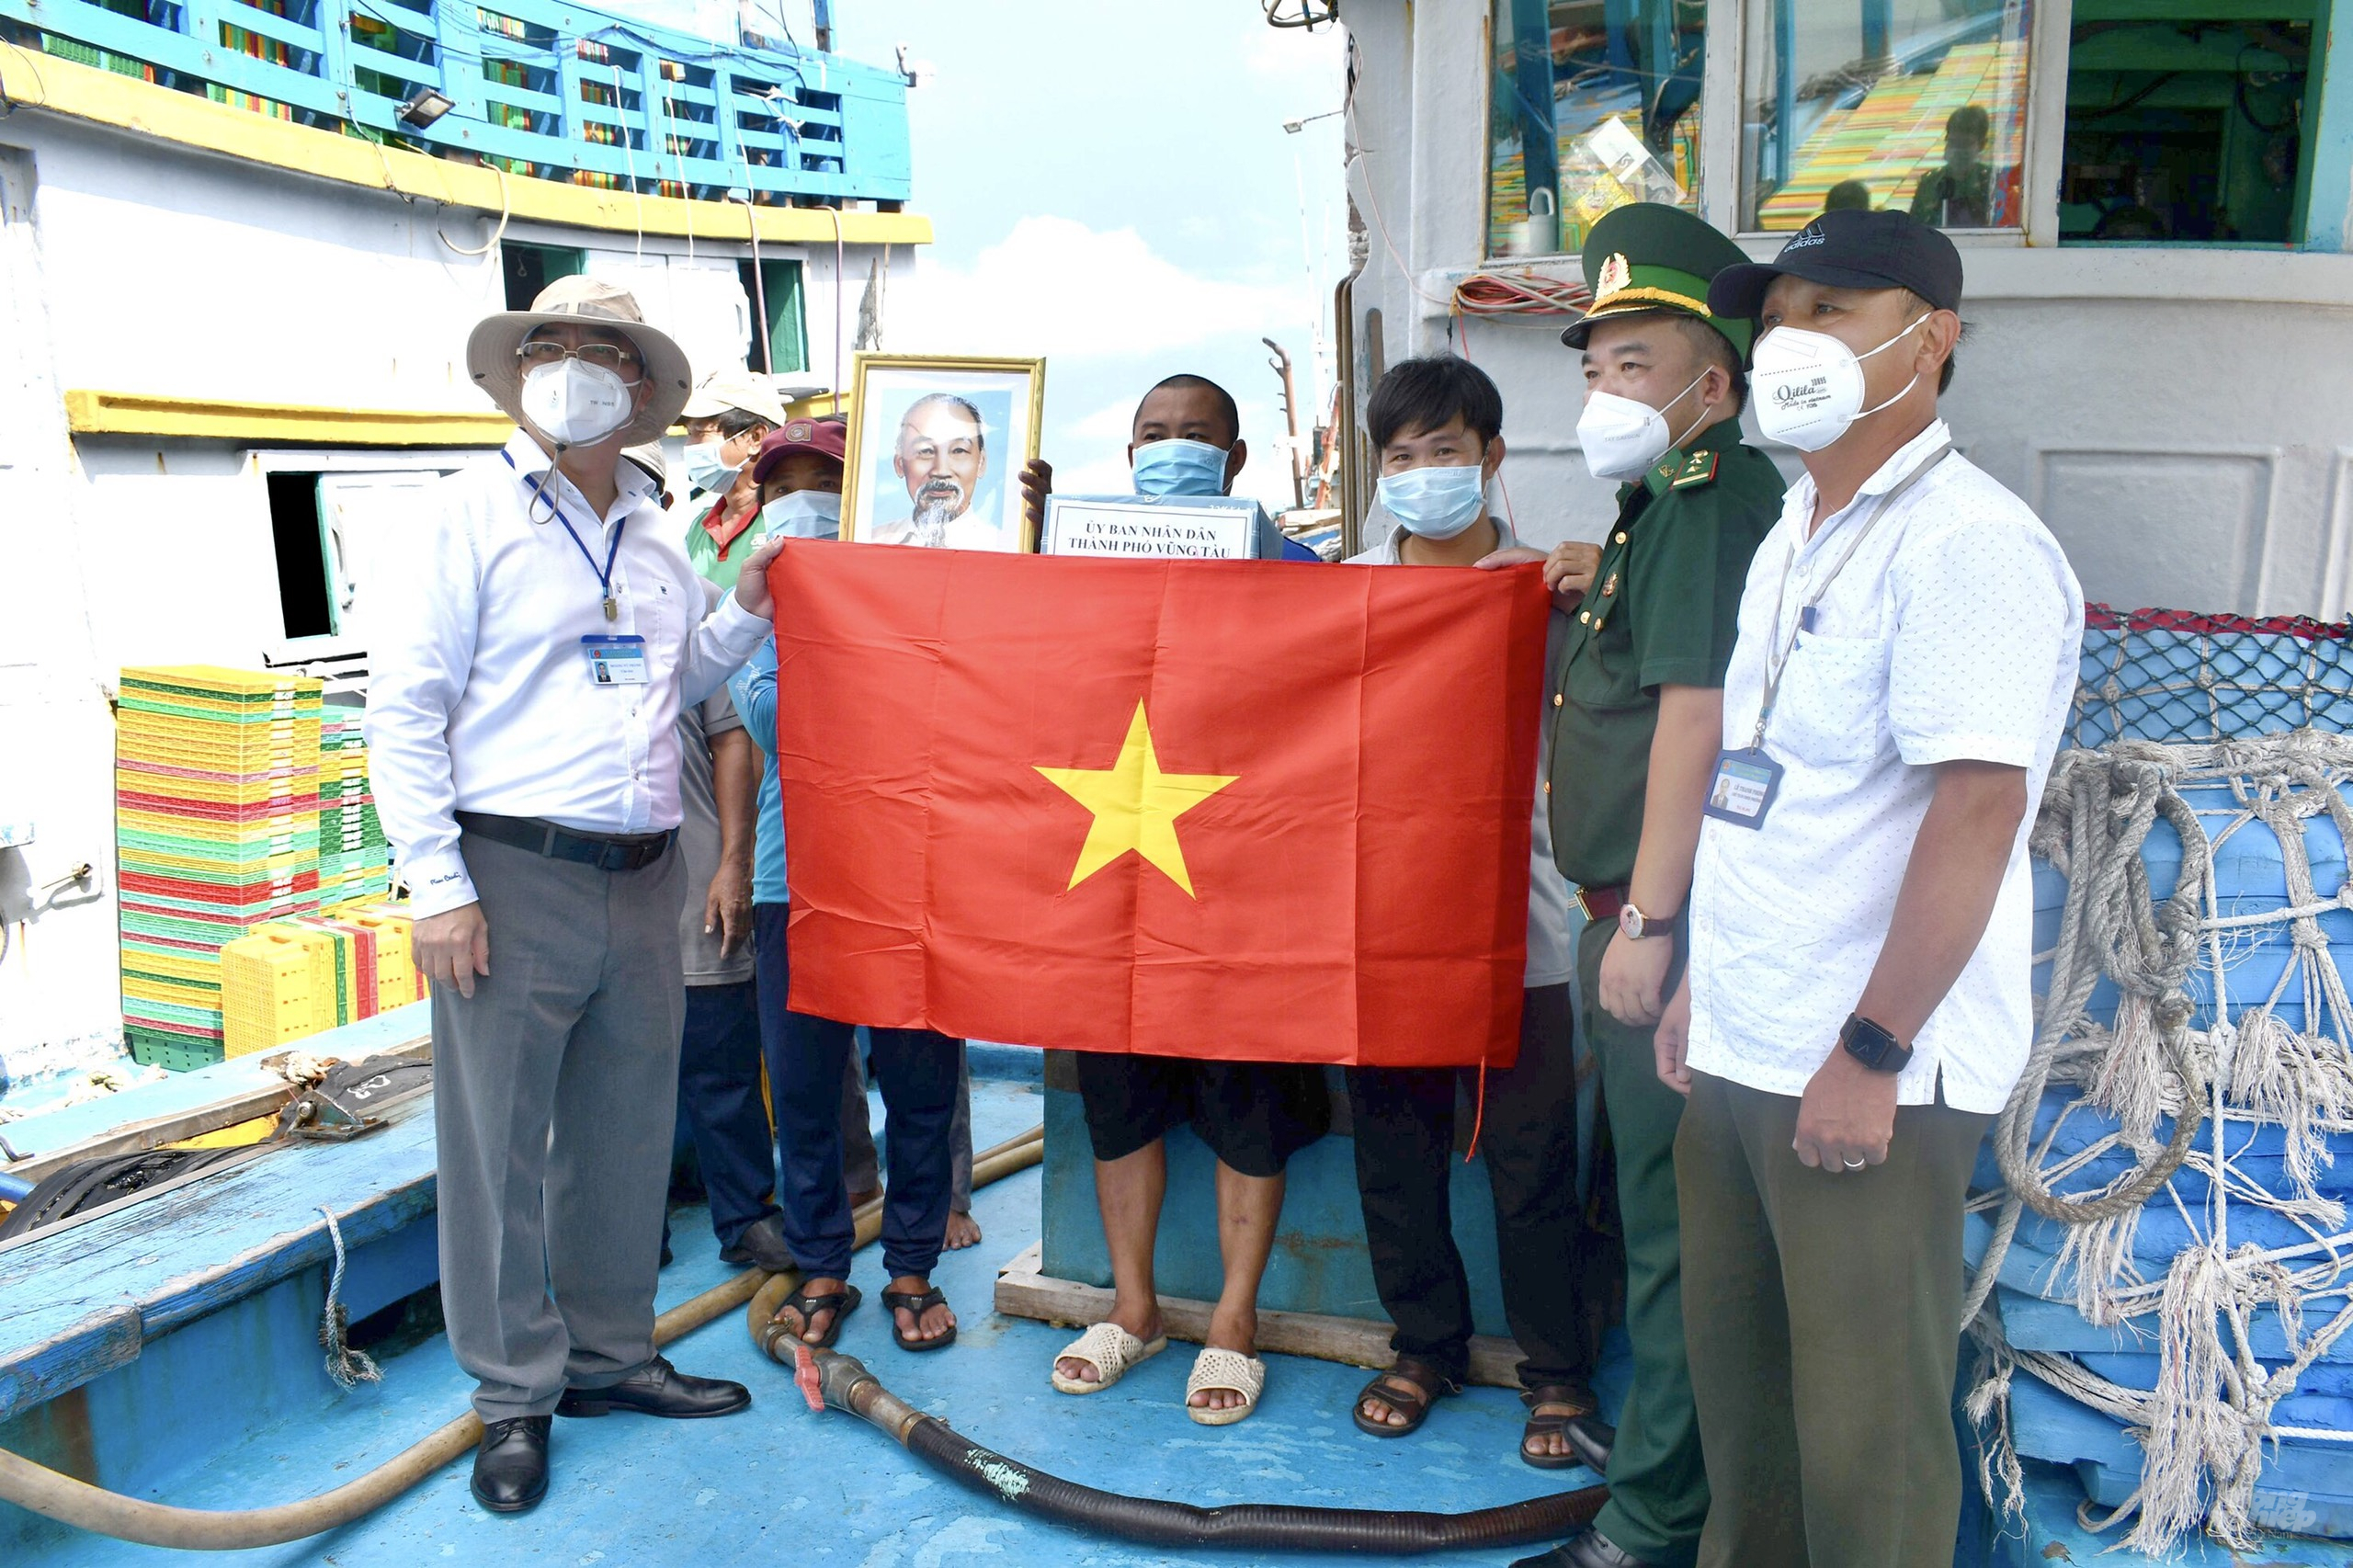 Ông Hoàng Vũ Thảnh, Chủ tịch UBND TP. Vũng Tàu (bên trái), tặng cờ Tổ quốc và ảnh Bác Hồ cho ngư dân tàu dịch vụ nghề cá. Ảnh: MV